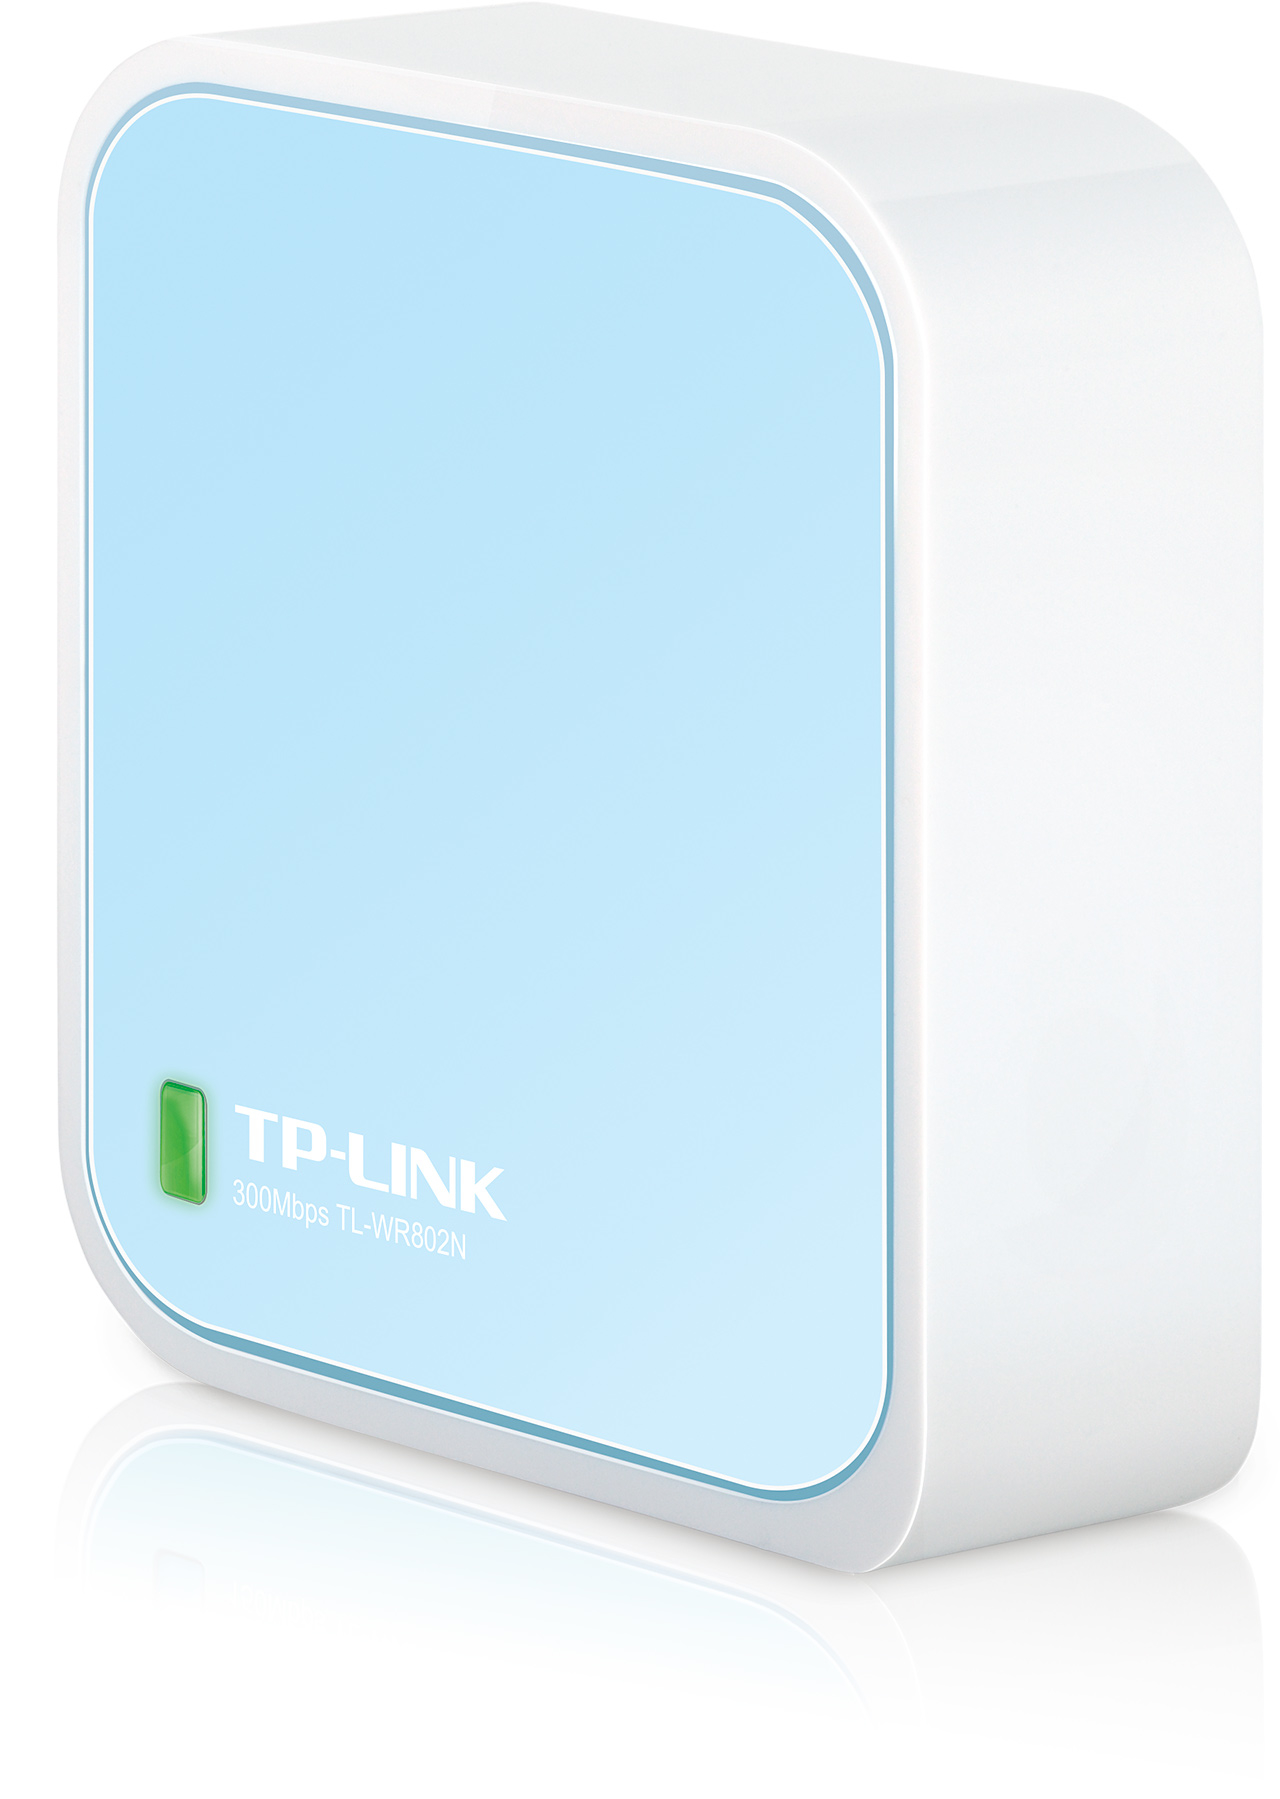 TP-LINK WLAN N Mini Pocket AP Router TLWR802N 300Mbps